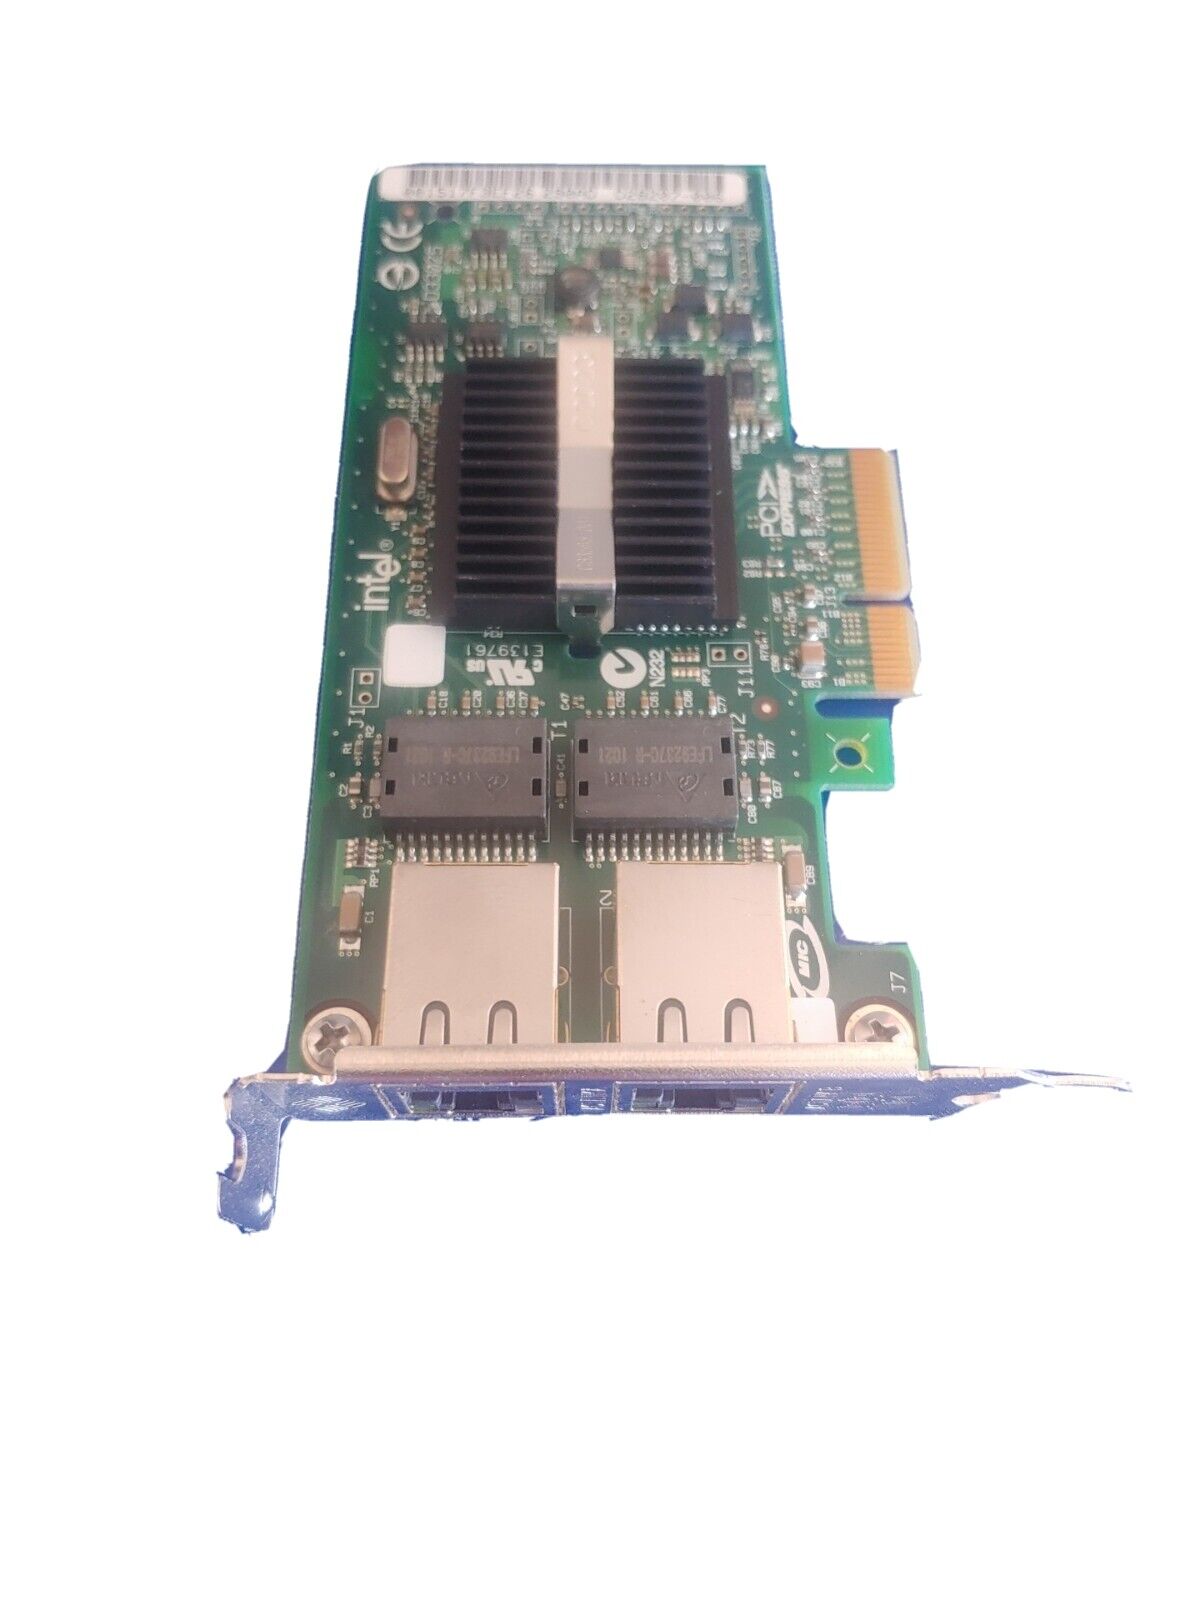 SUN 371-0905 X7280A-2 PCIE Dual Gigibit Ethernet UTP- w/WARRANTY 4z